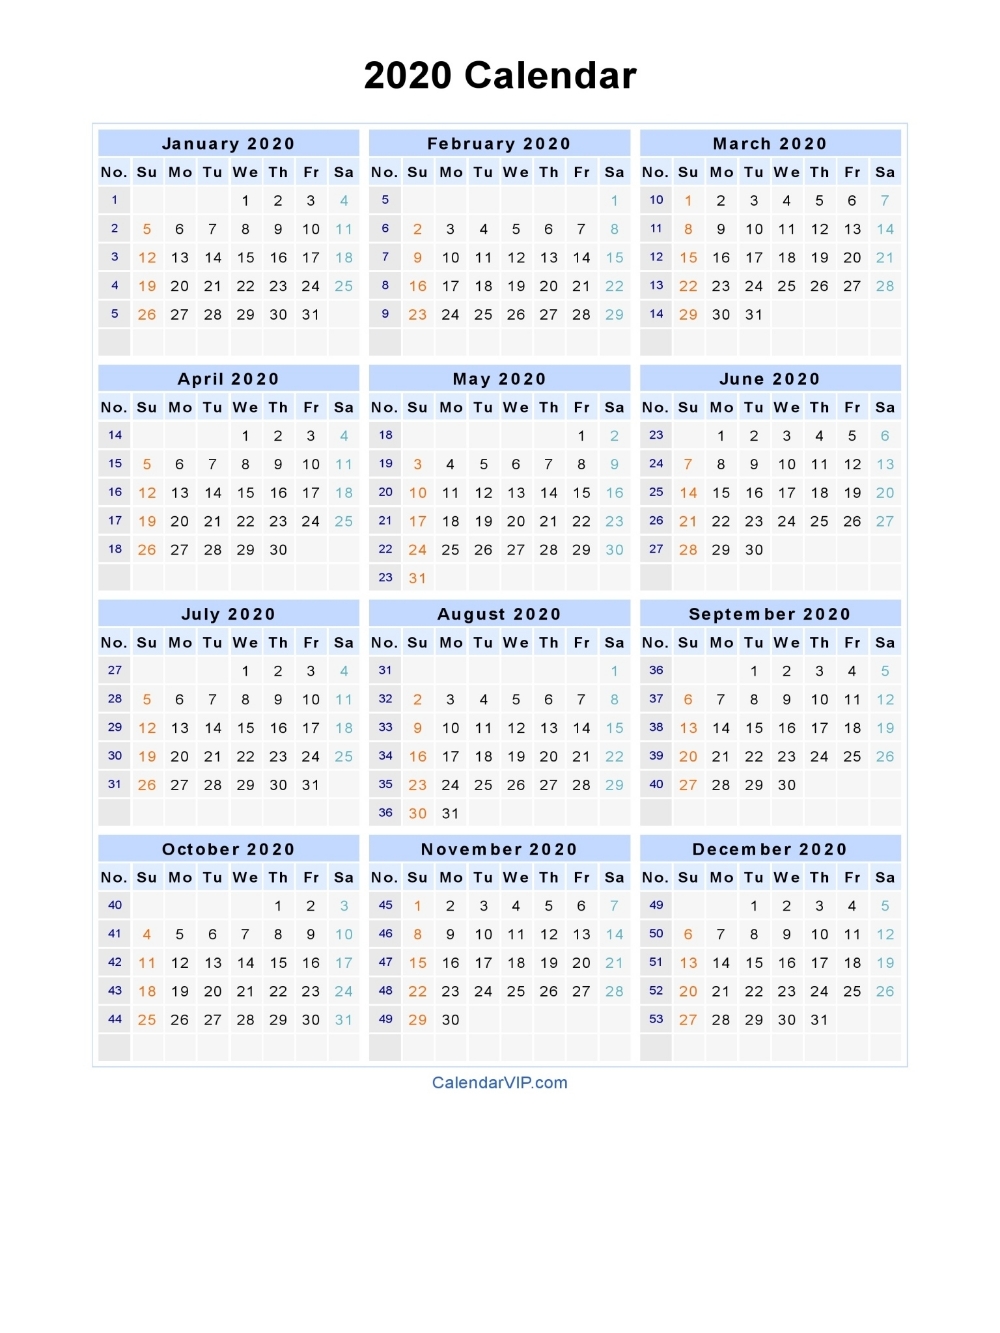 2020 Calendar - Blank Printable Calendar Template In Pdf Exceptional Blank Calendar Template 2020 No Weekends